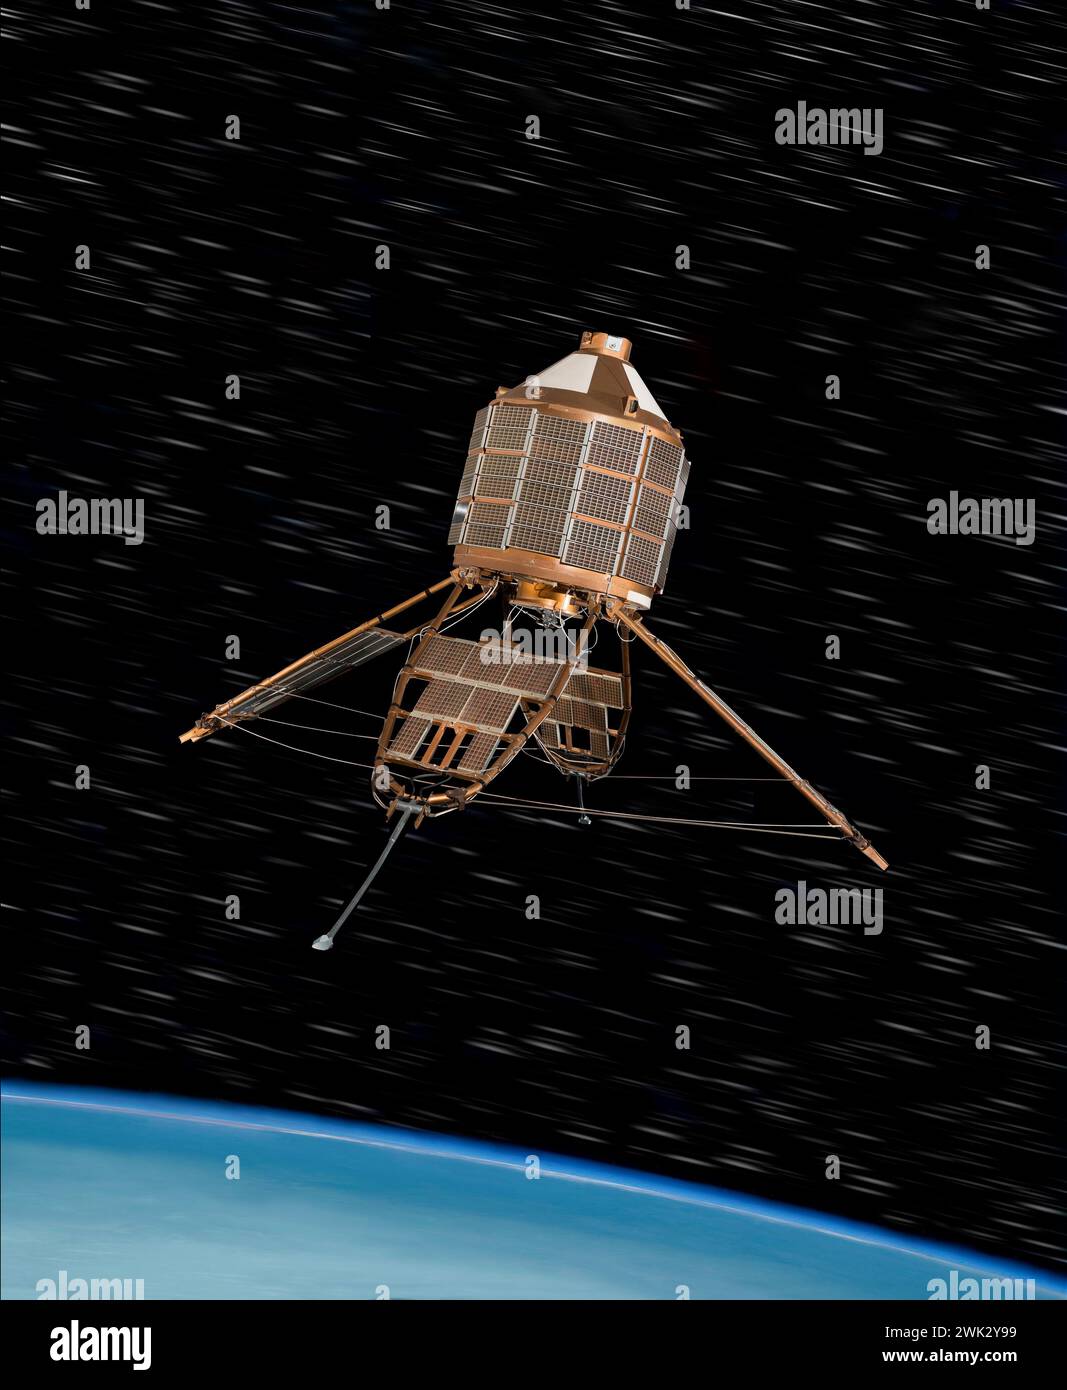 Modell des wissenschaftlichen Forschungssatelliten Ariel. Über der Erde Horizont zu Sternen. Experimente mit elektromagnetischer Strahlung und energieladenen Partikeln Stockfoto